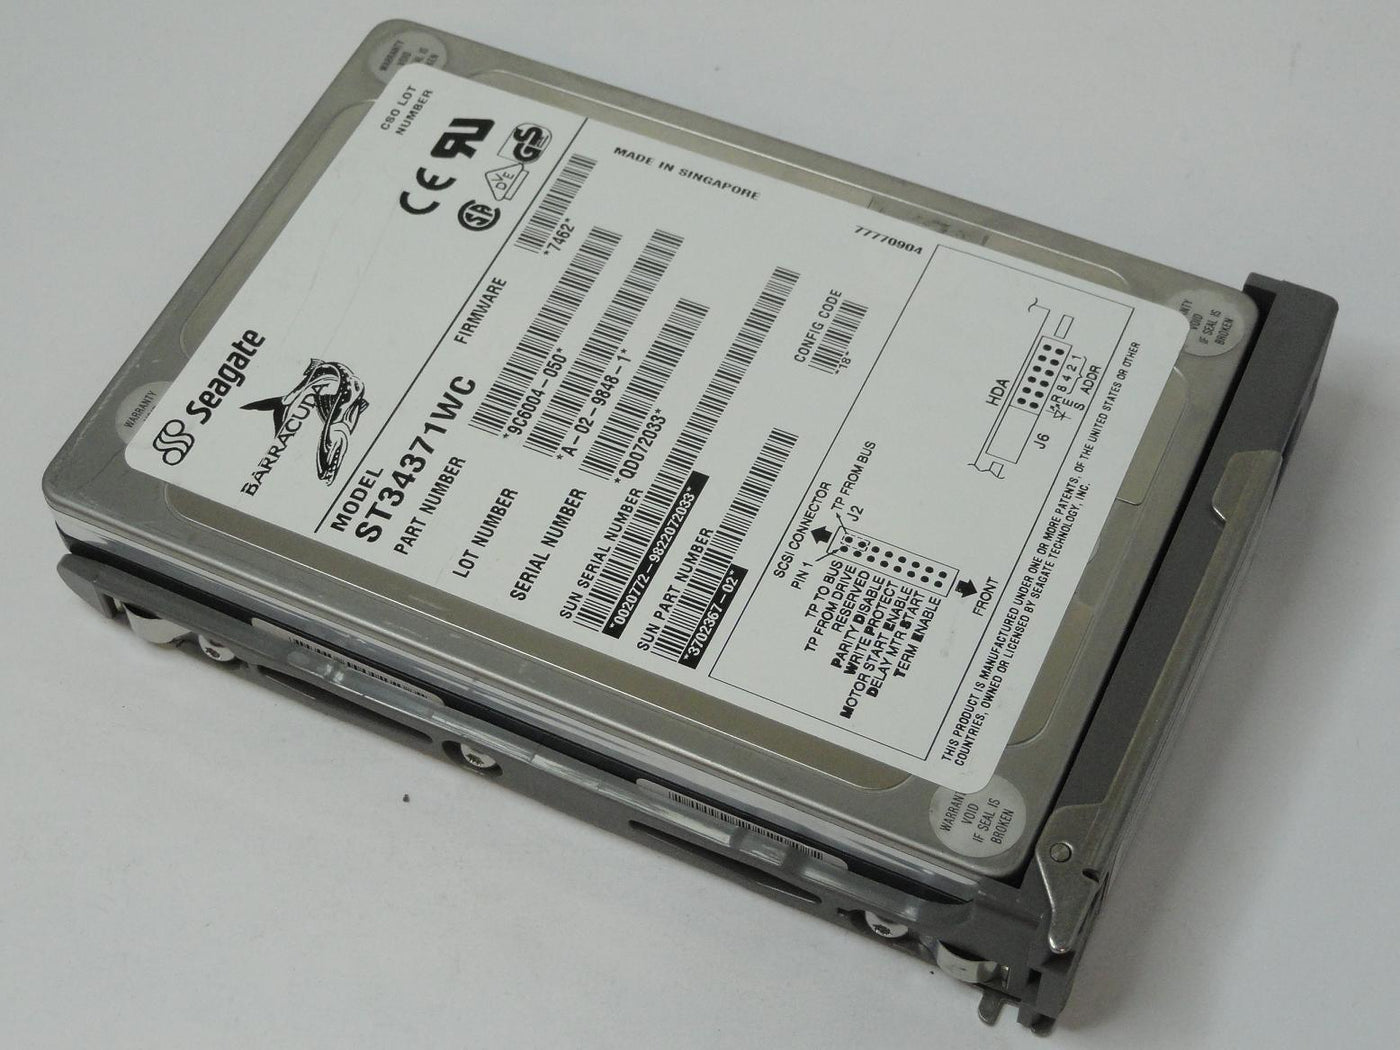 9C6004-050 - Seagate Sun 4.3GB SCSI 80 Pin 7200rpm 3.5in Barracuda HDD in Caddy - USED